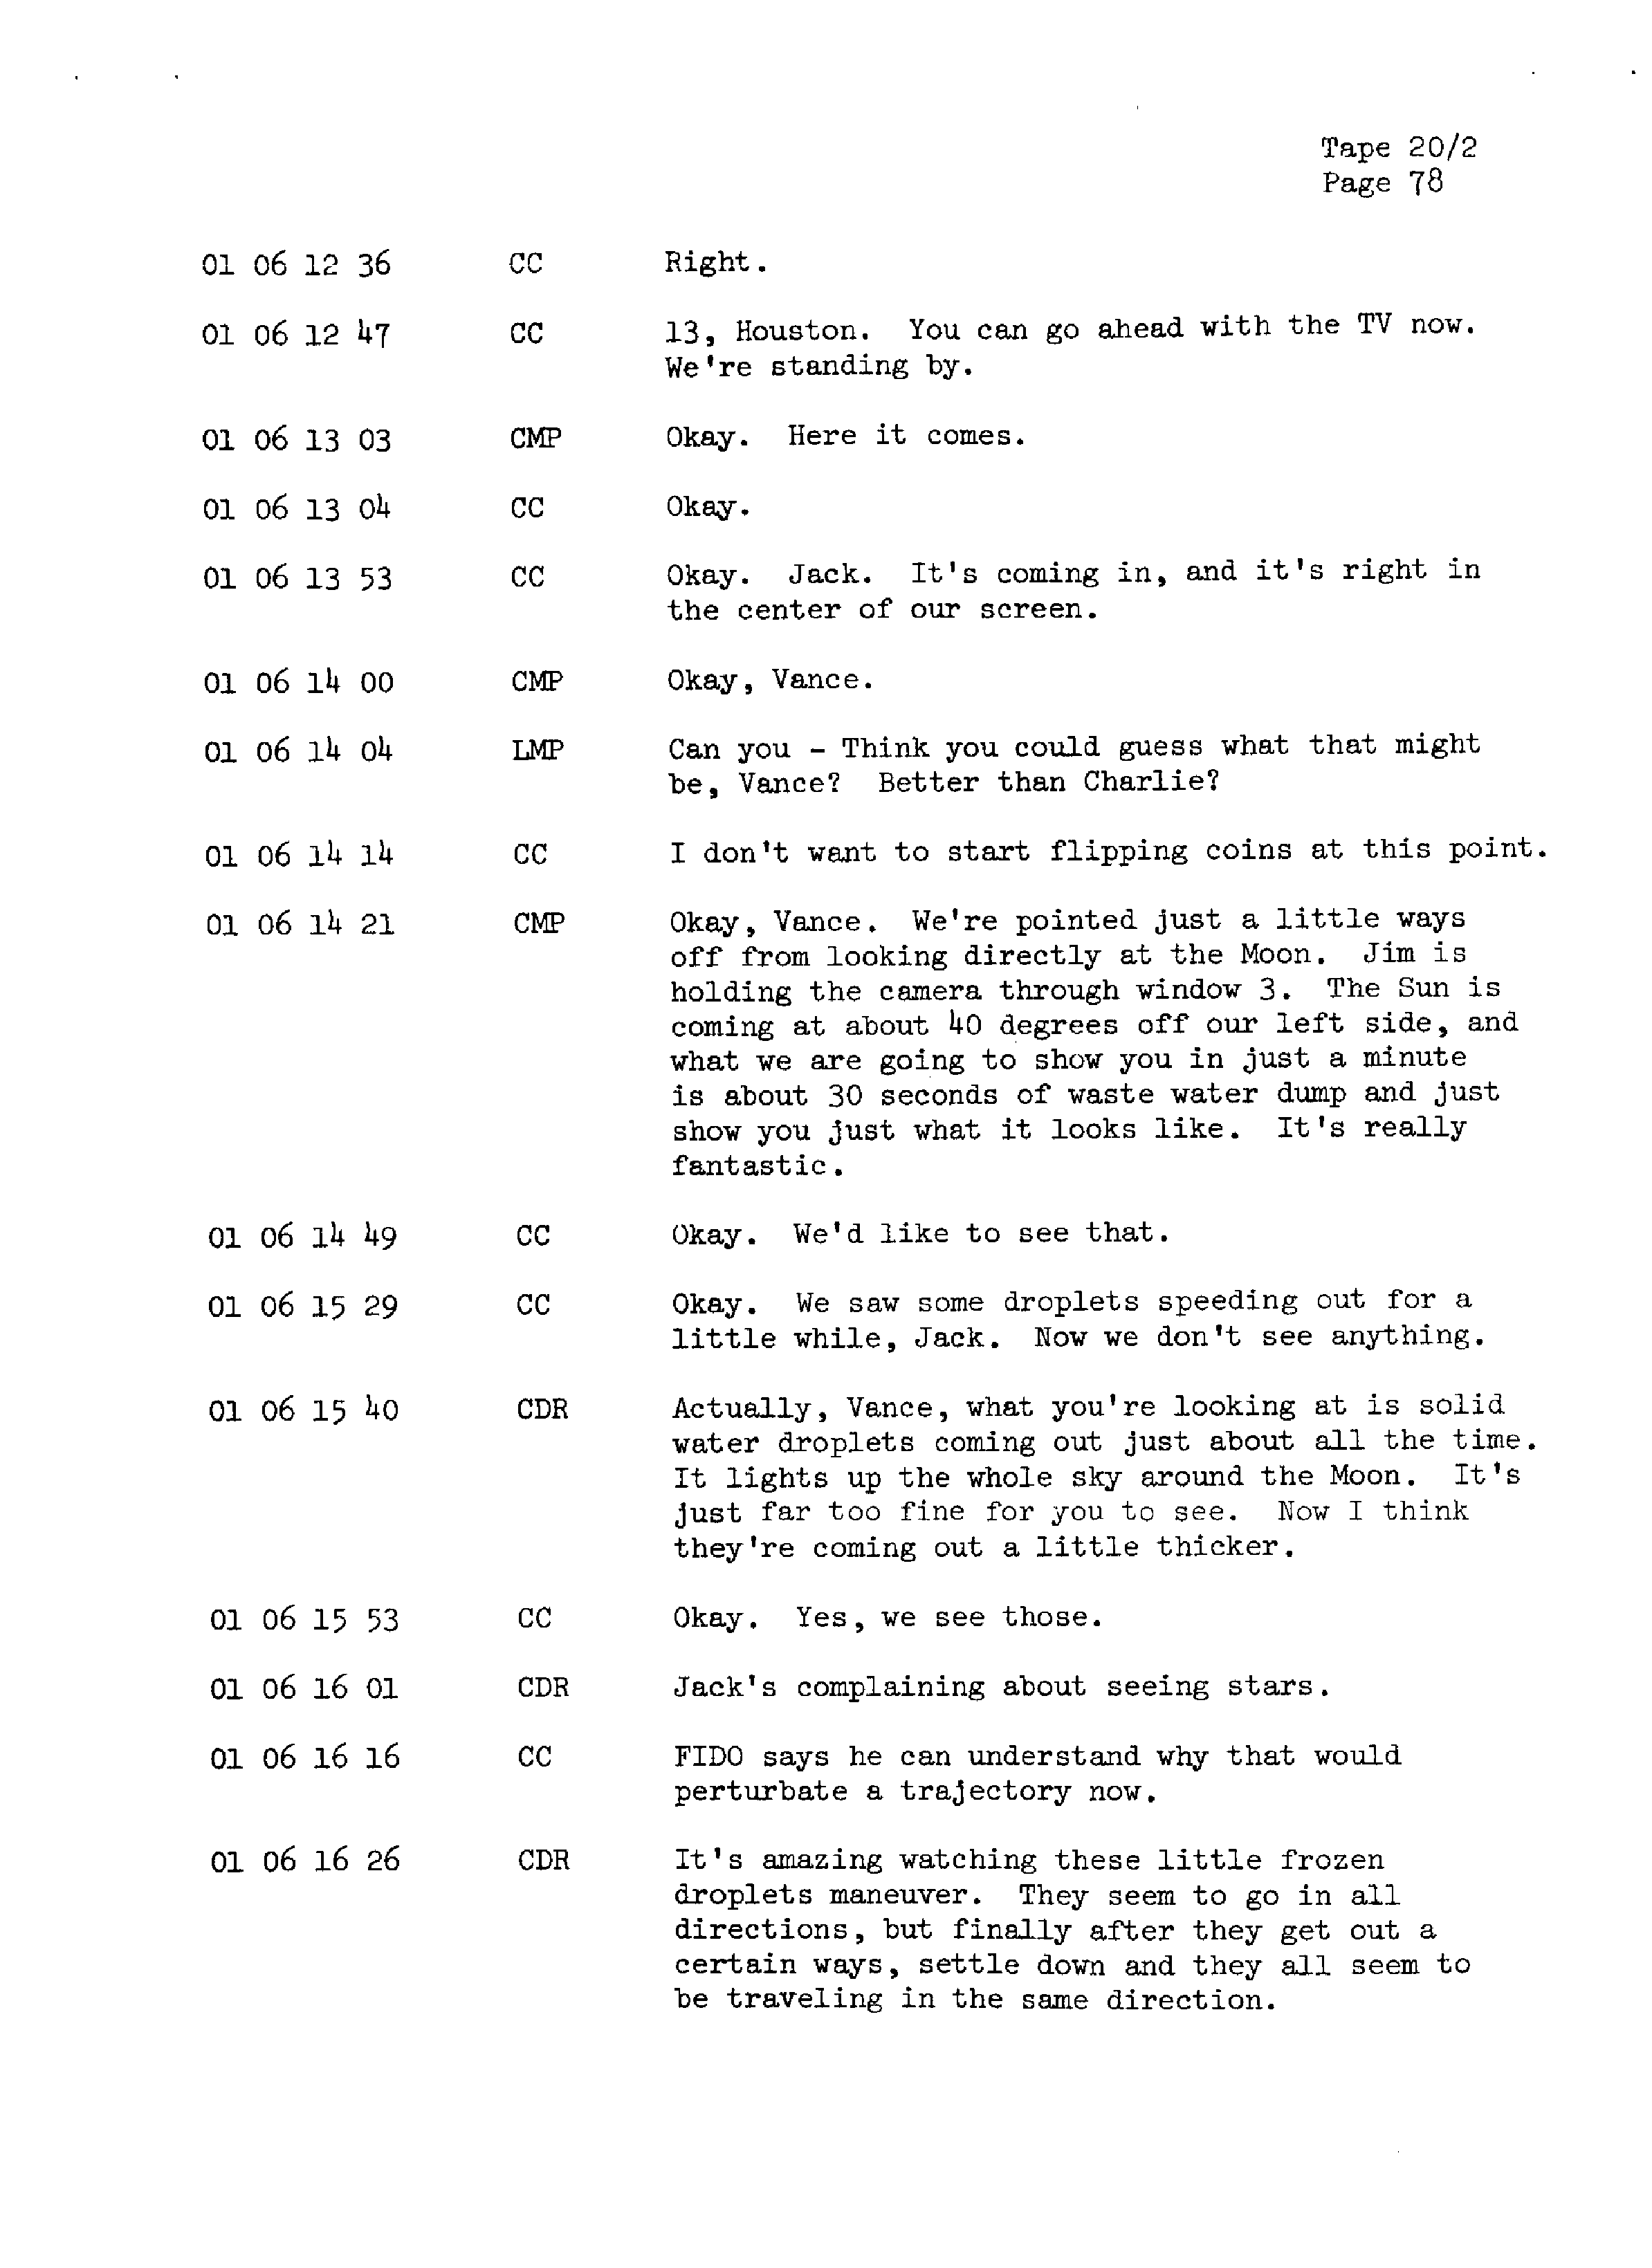 Page 85 of Apollo 13’s original transcript